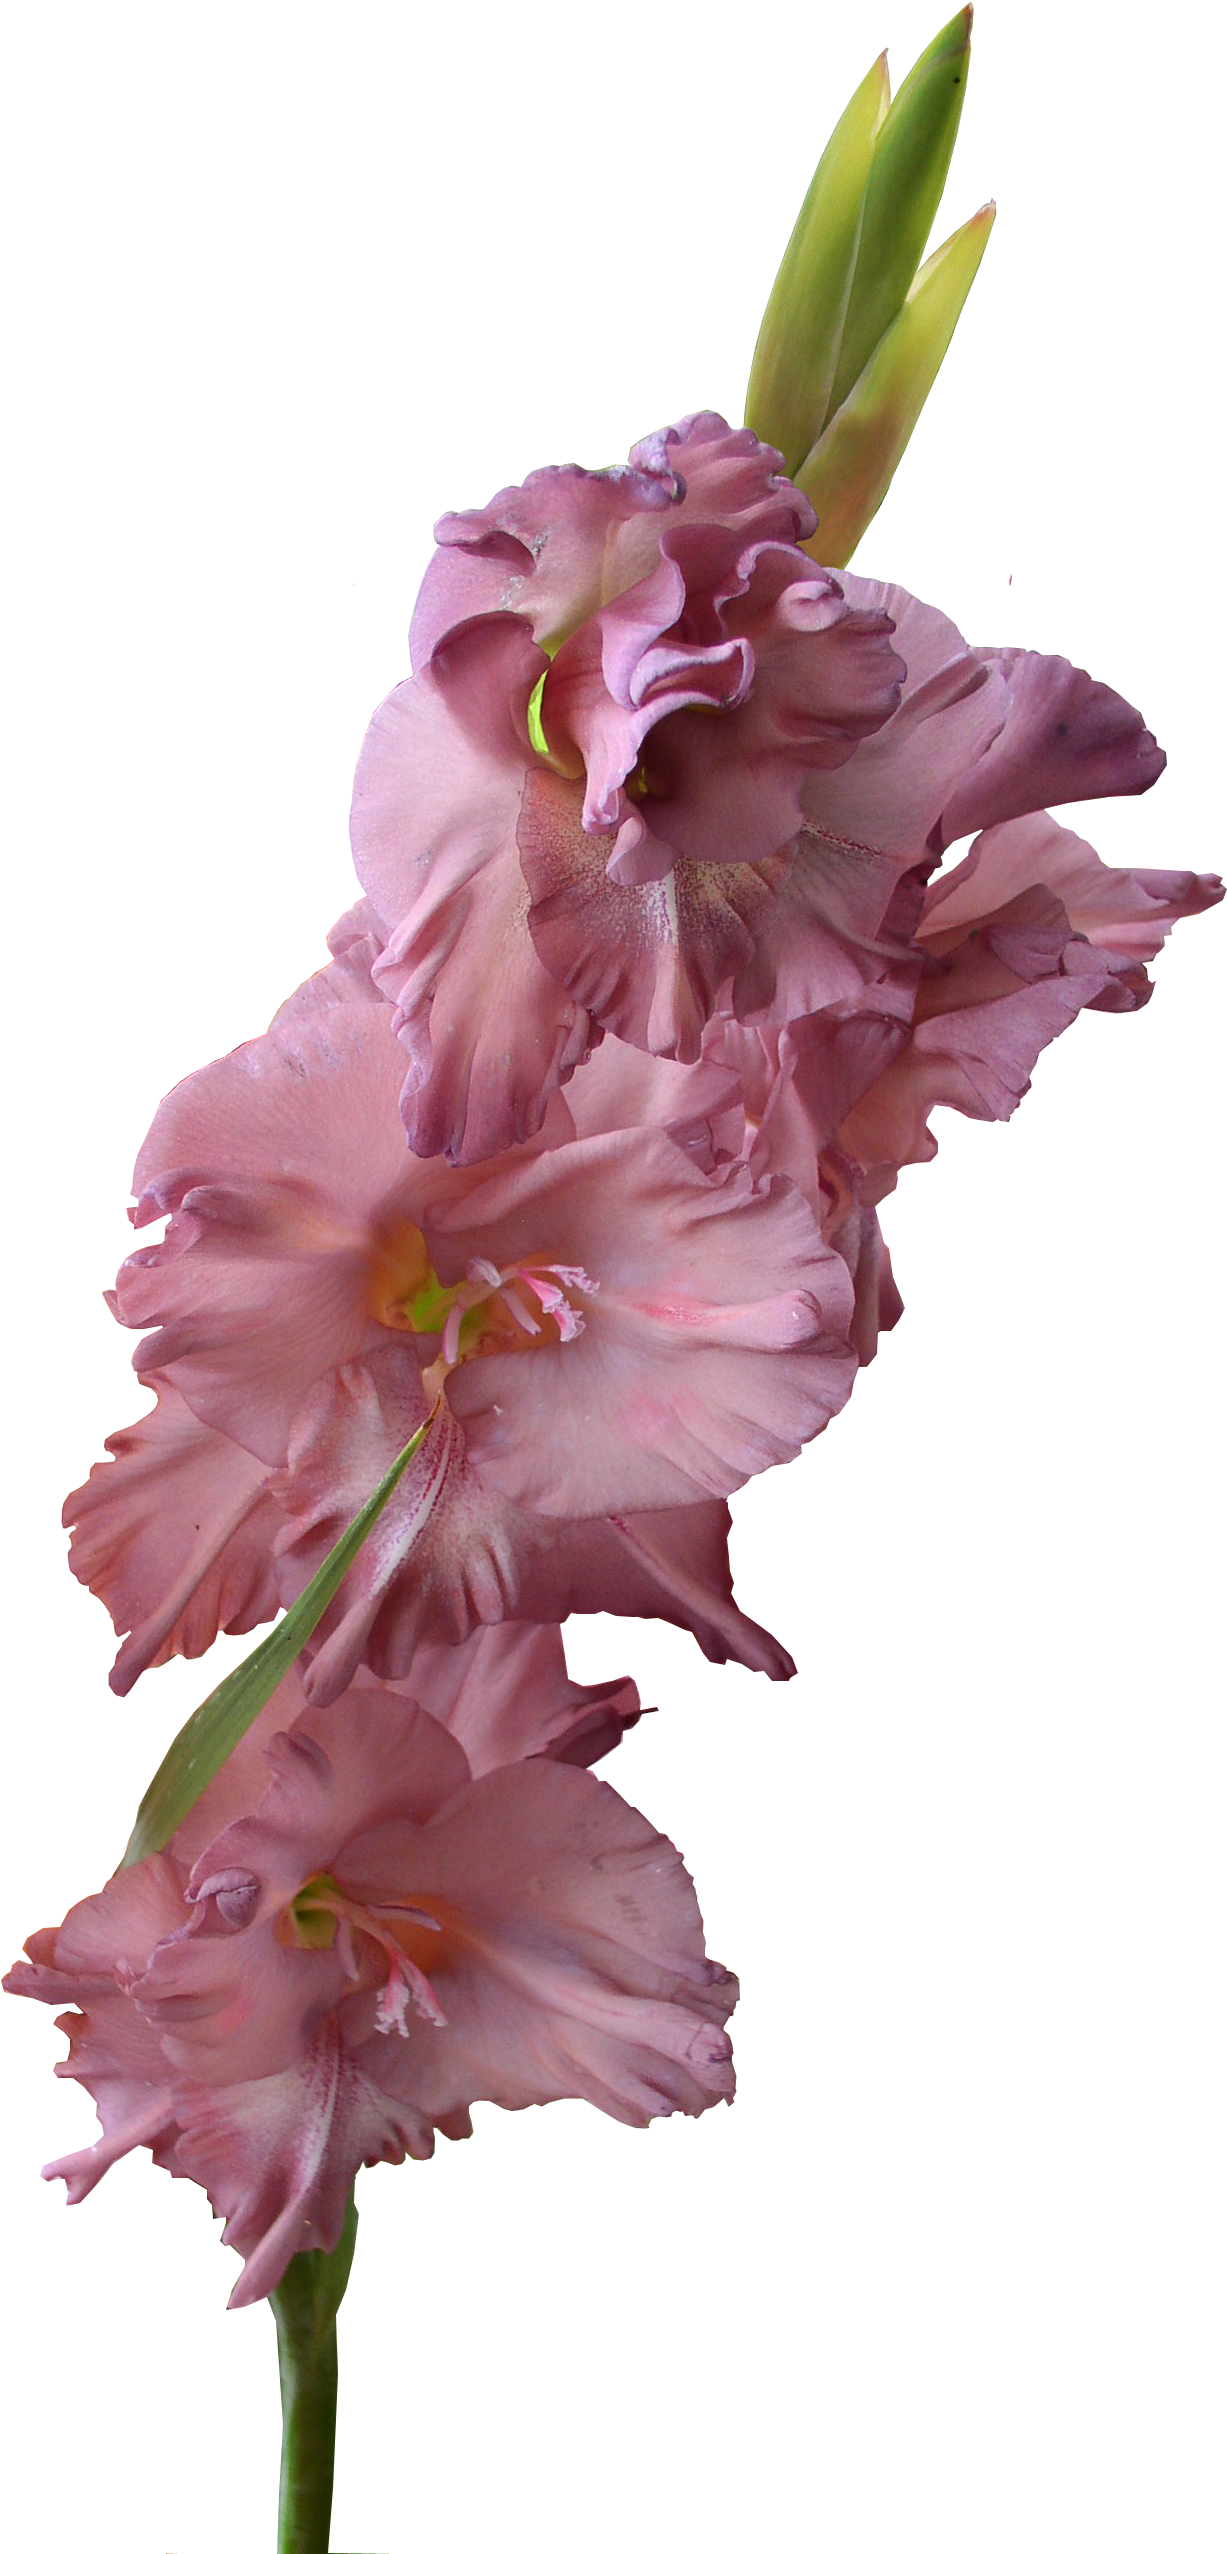 Gladiolus Png Pic - Gladiolus Flower Transparent Background (1369x2612), Png Download